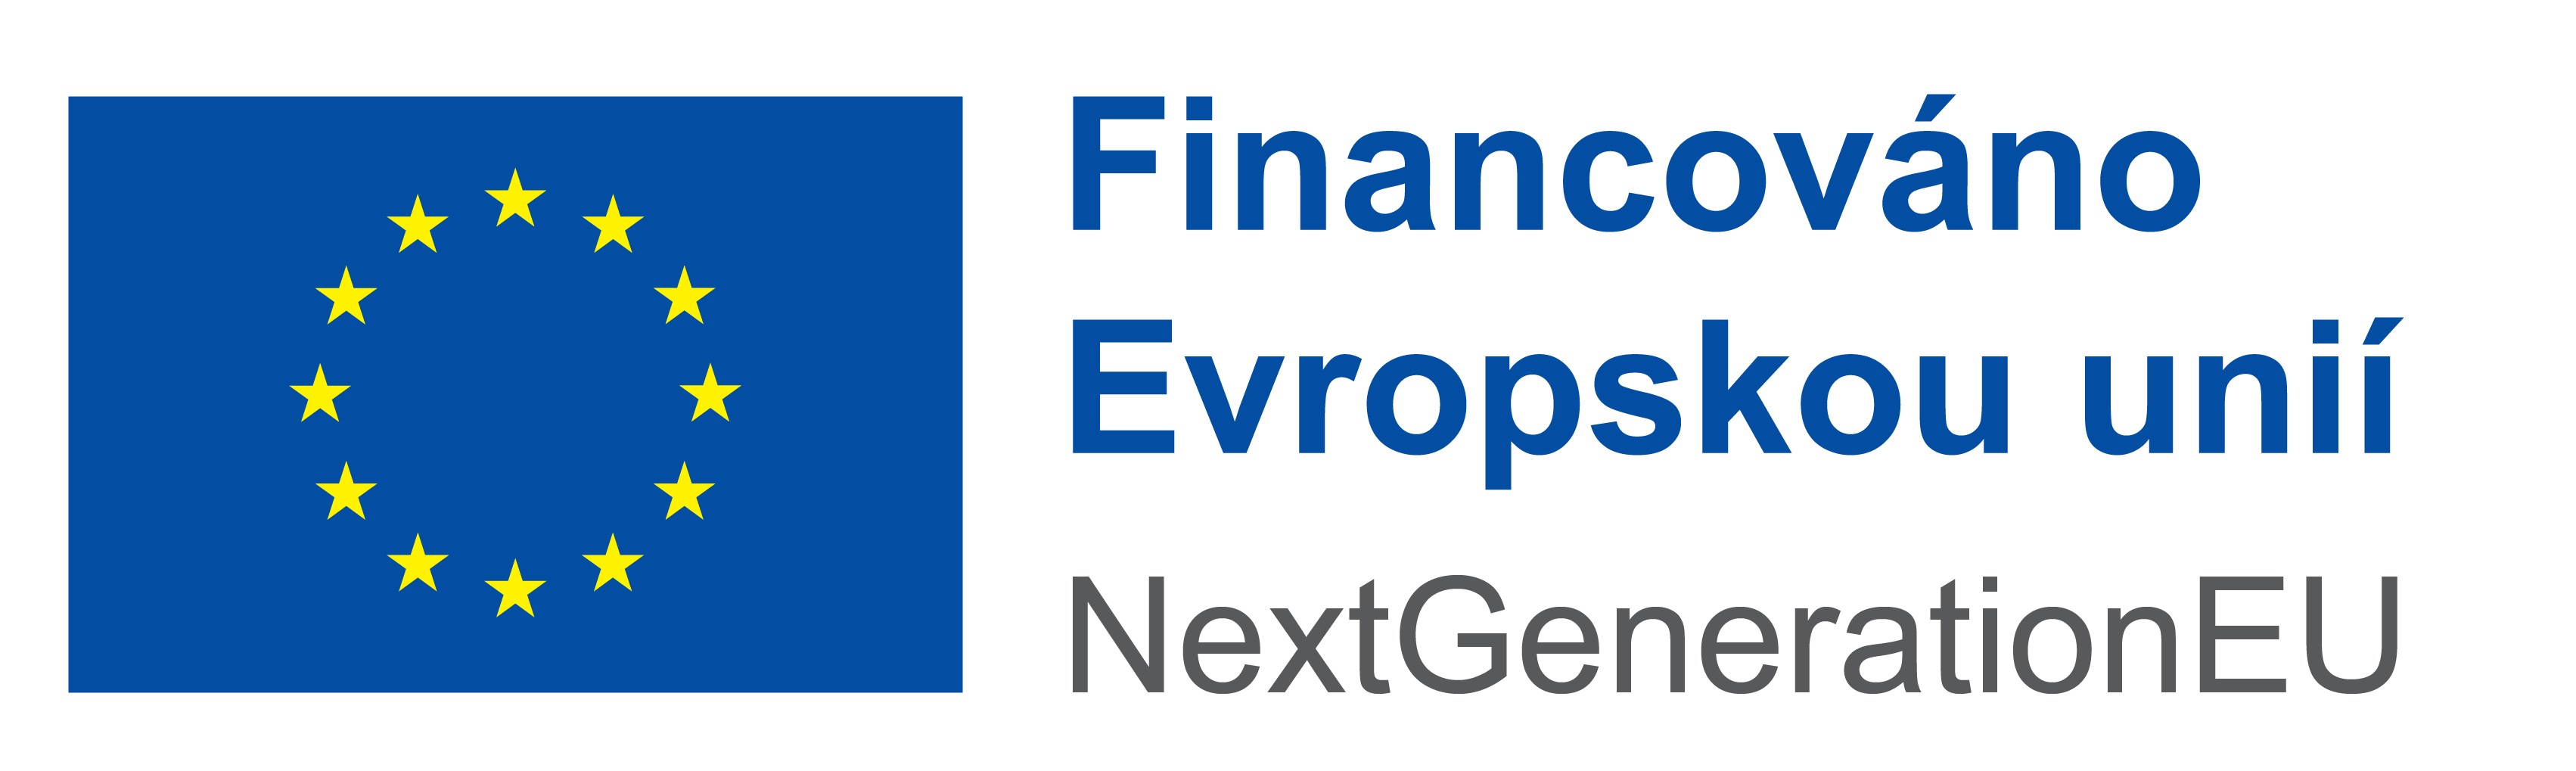 Financováno Evropskou unií NextGenerationEU